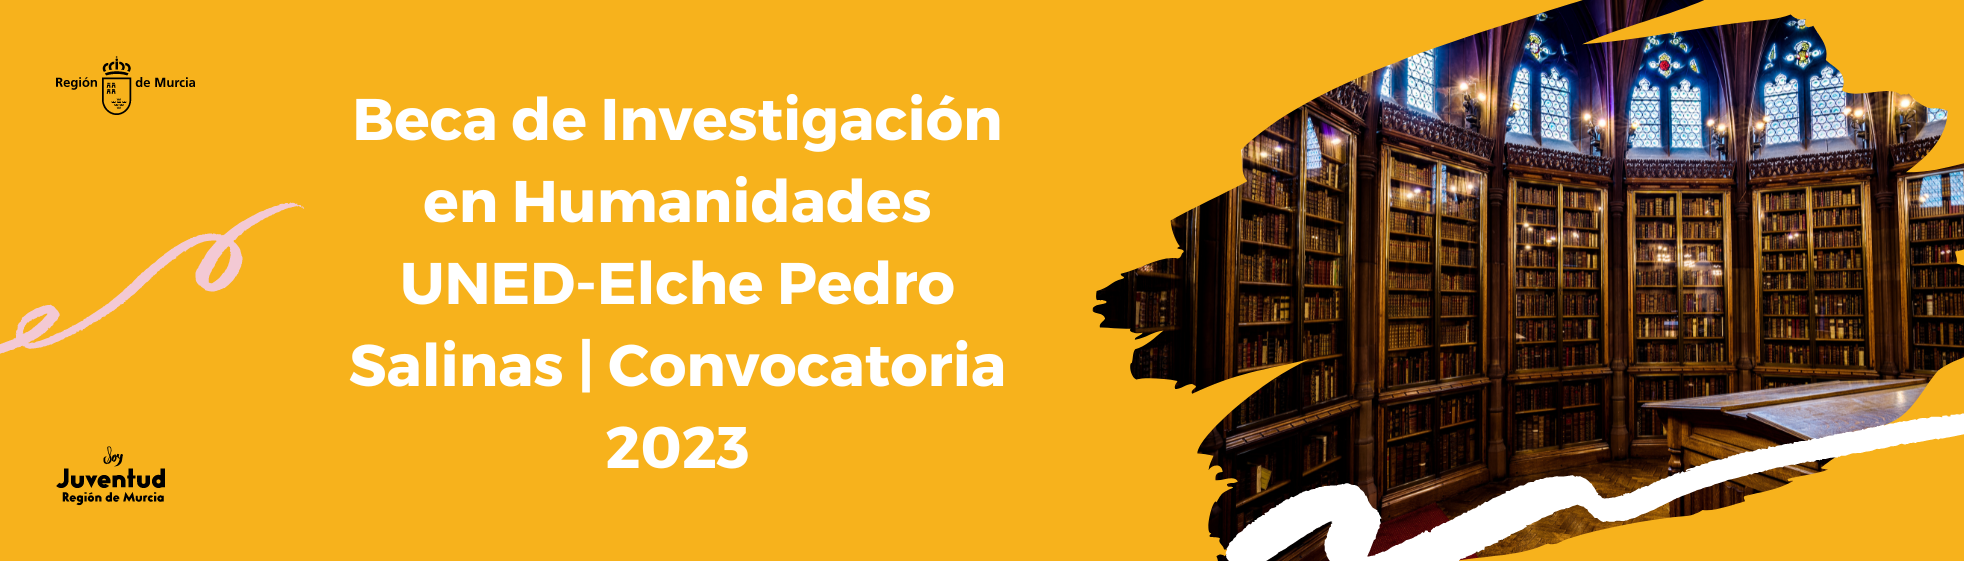 Beca de Investigación en Humanidades UNED-Elche Pedro Salinas | Convocatoria 2023